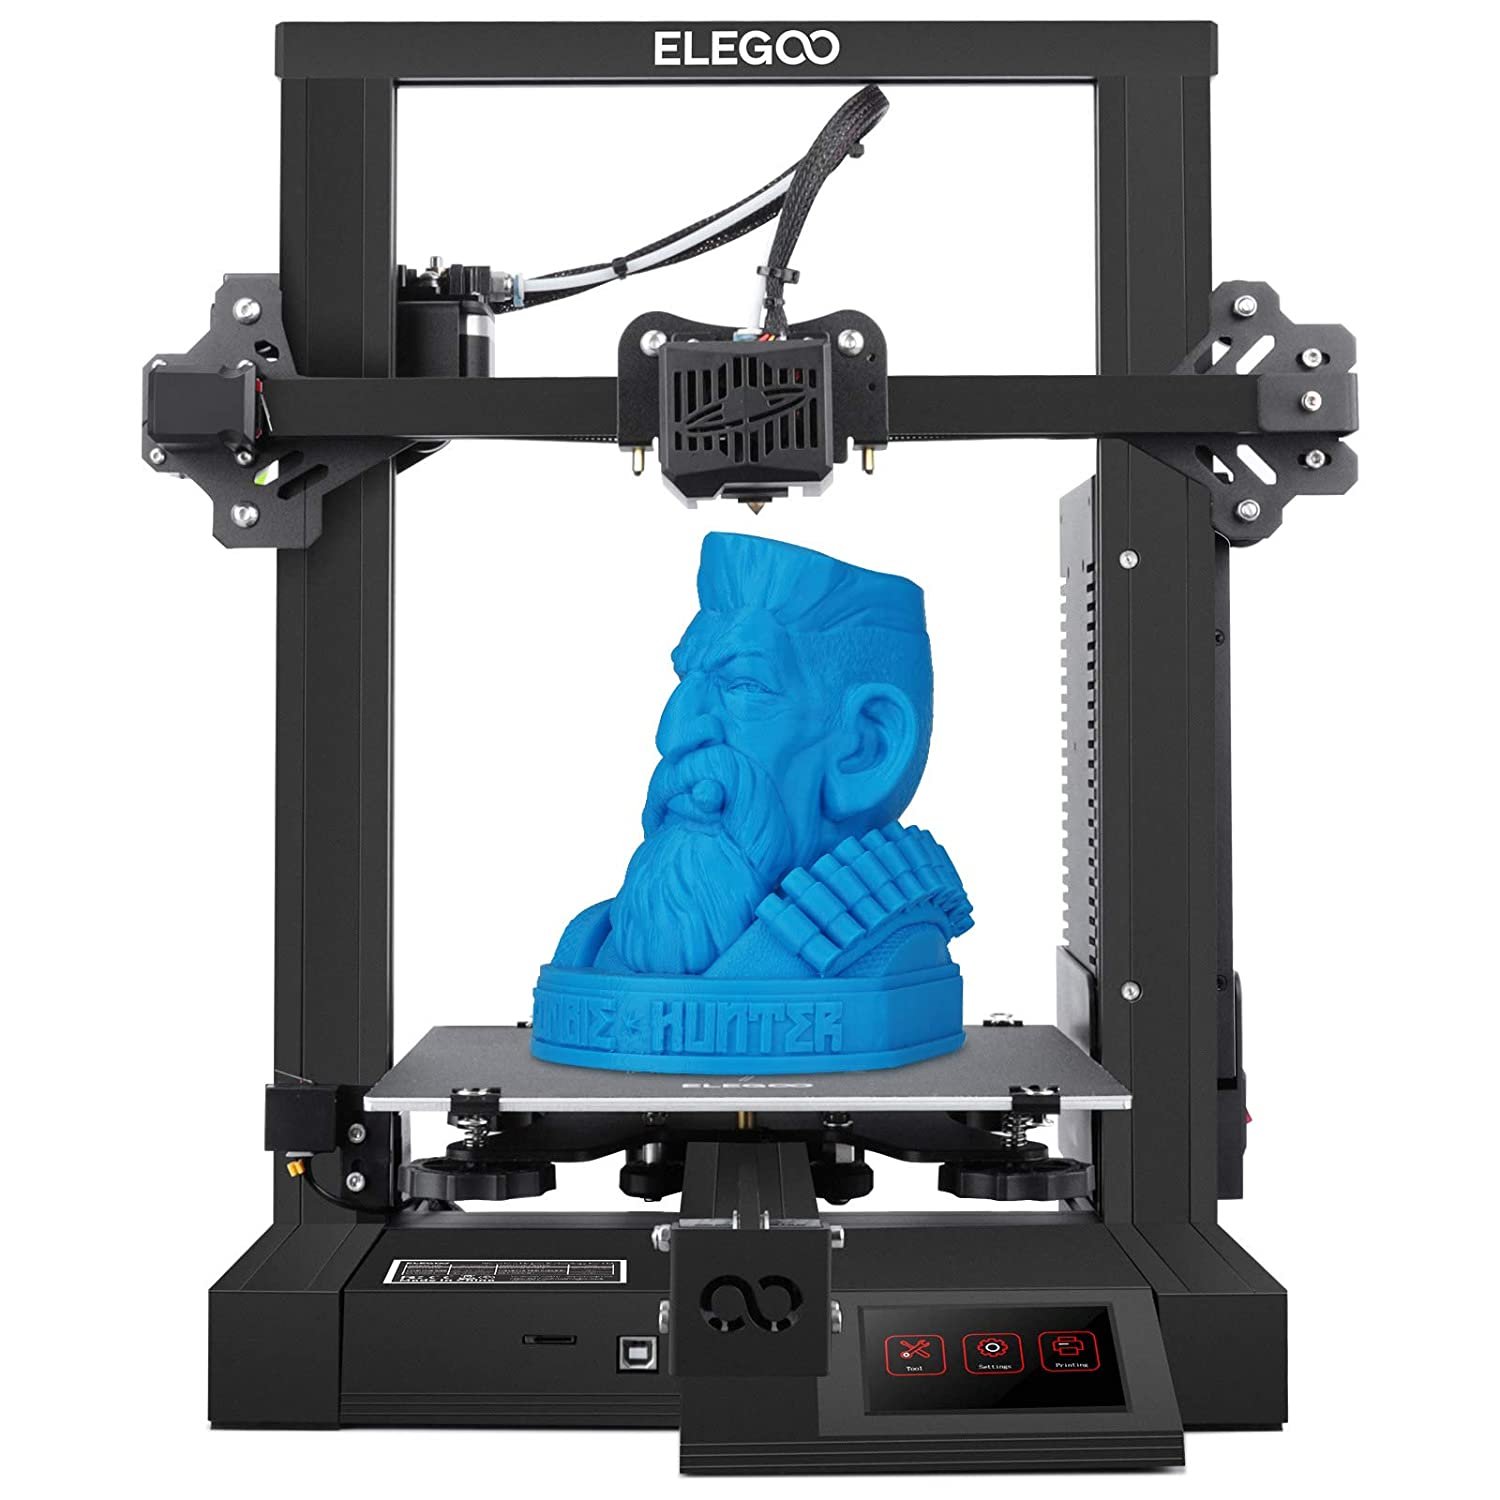 Quelle imprimante pour débuter dans l'impression 3D ? — La Nouvelle École